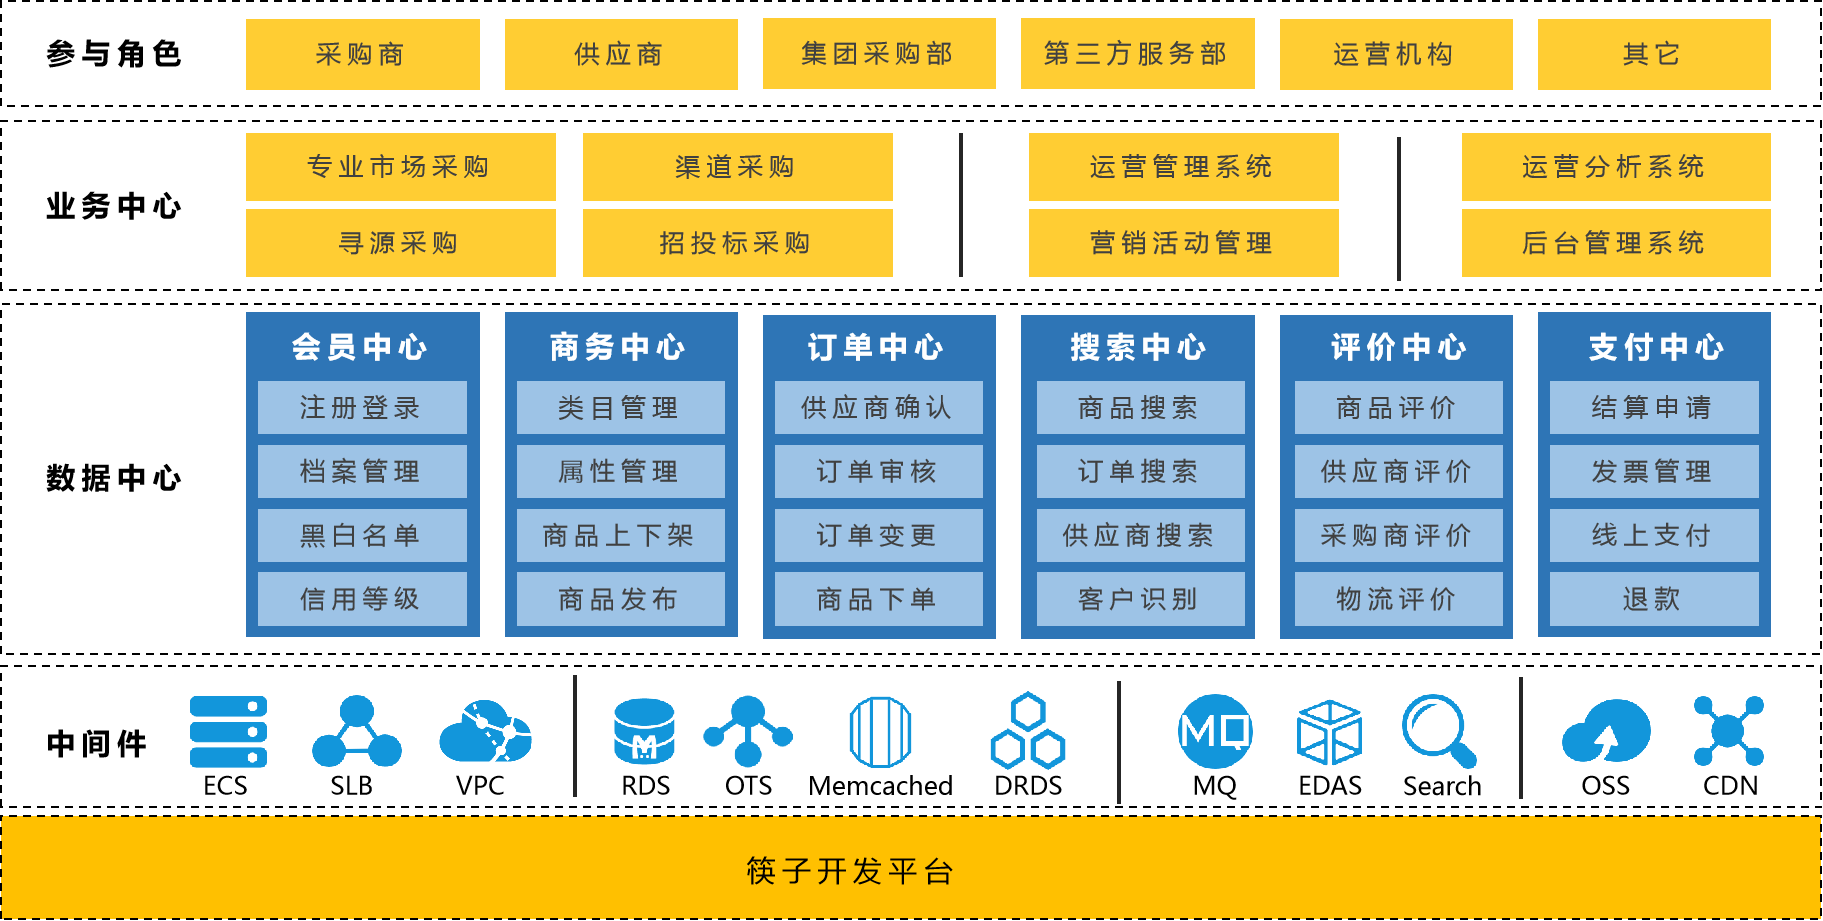 筷云产业互联网基础业务架构.png